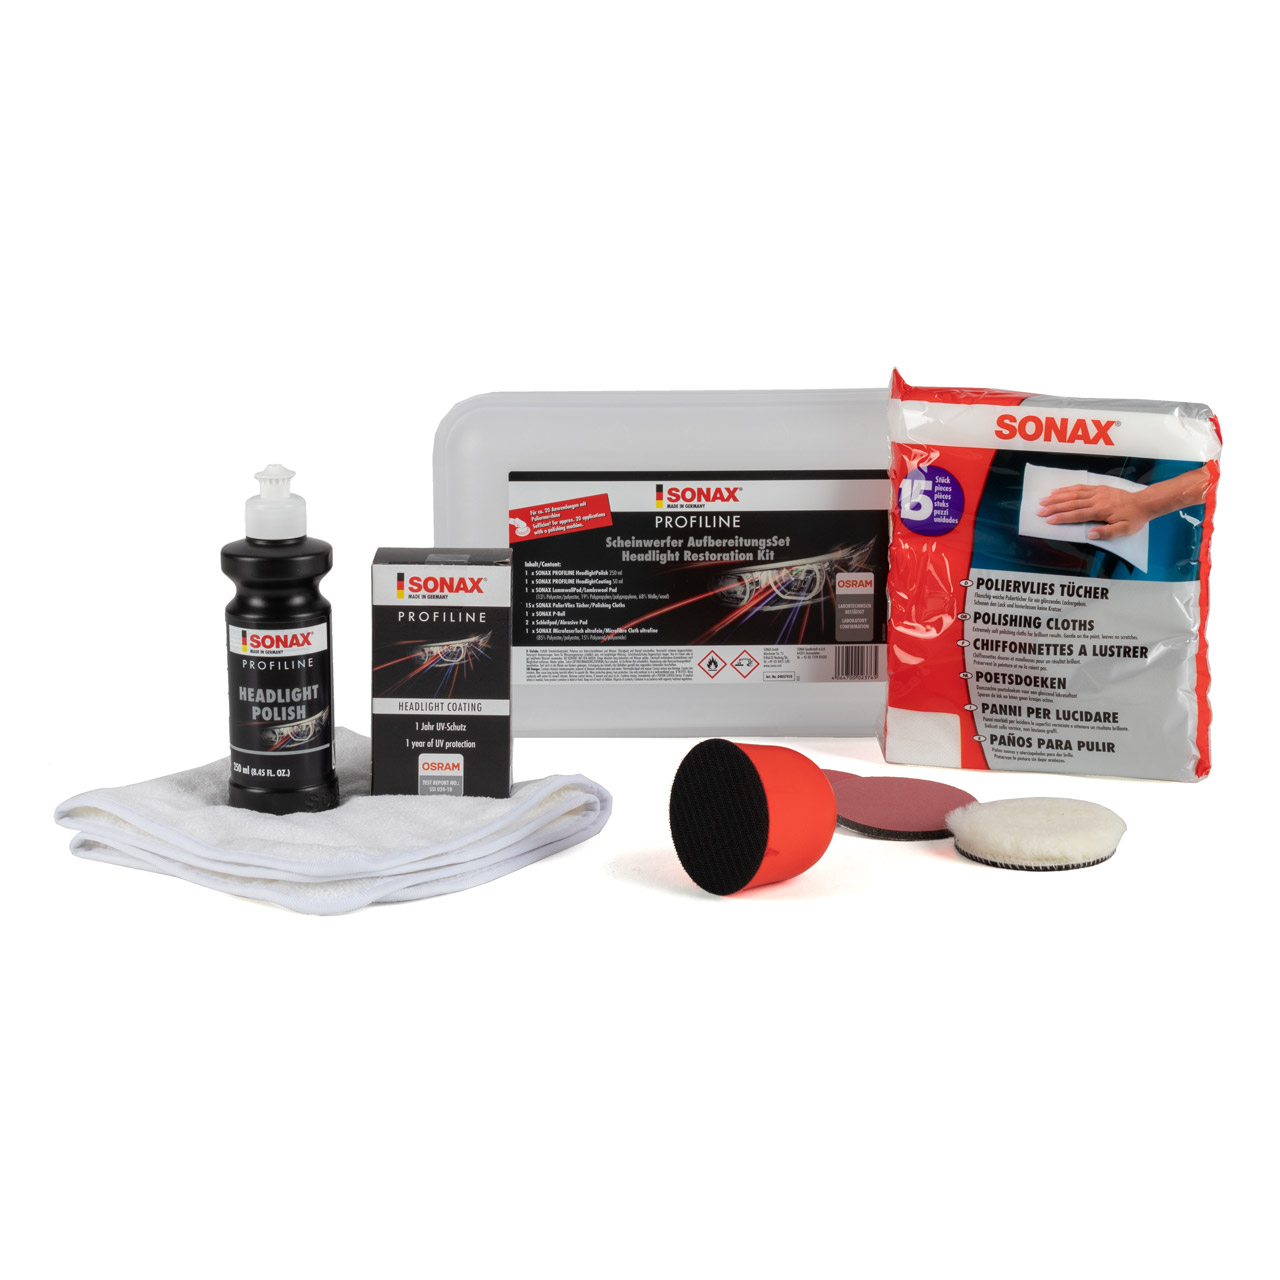 SONAX Scheinwerfer Aufbereitung Set jetzt online günstig kaufen, 17,99 €